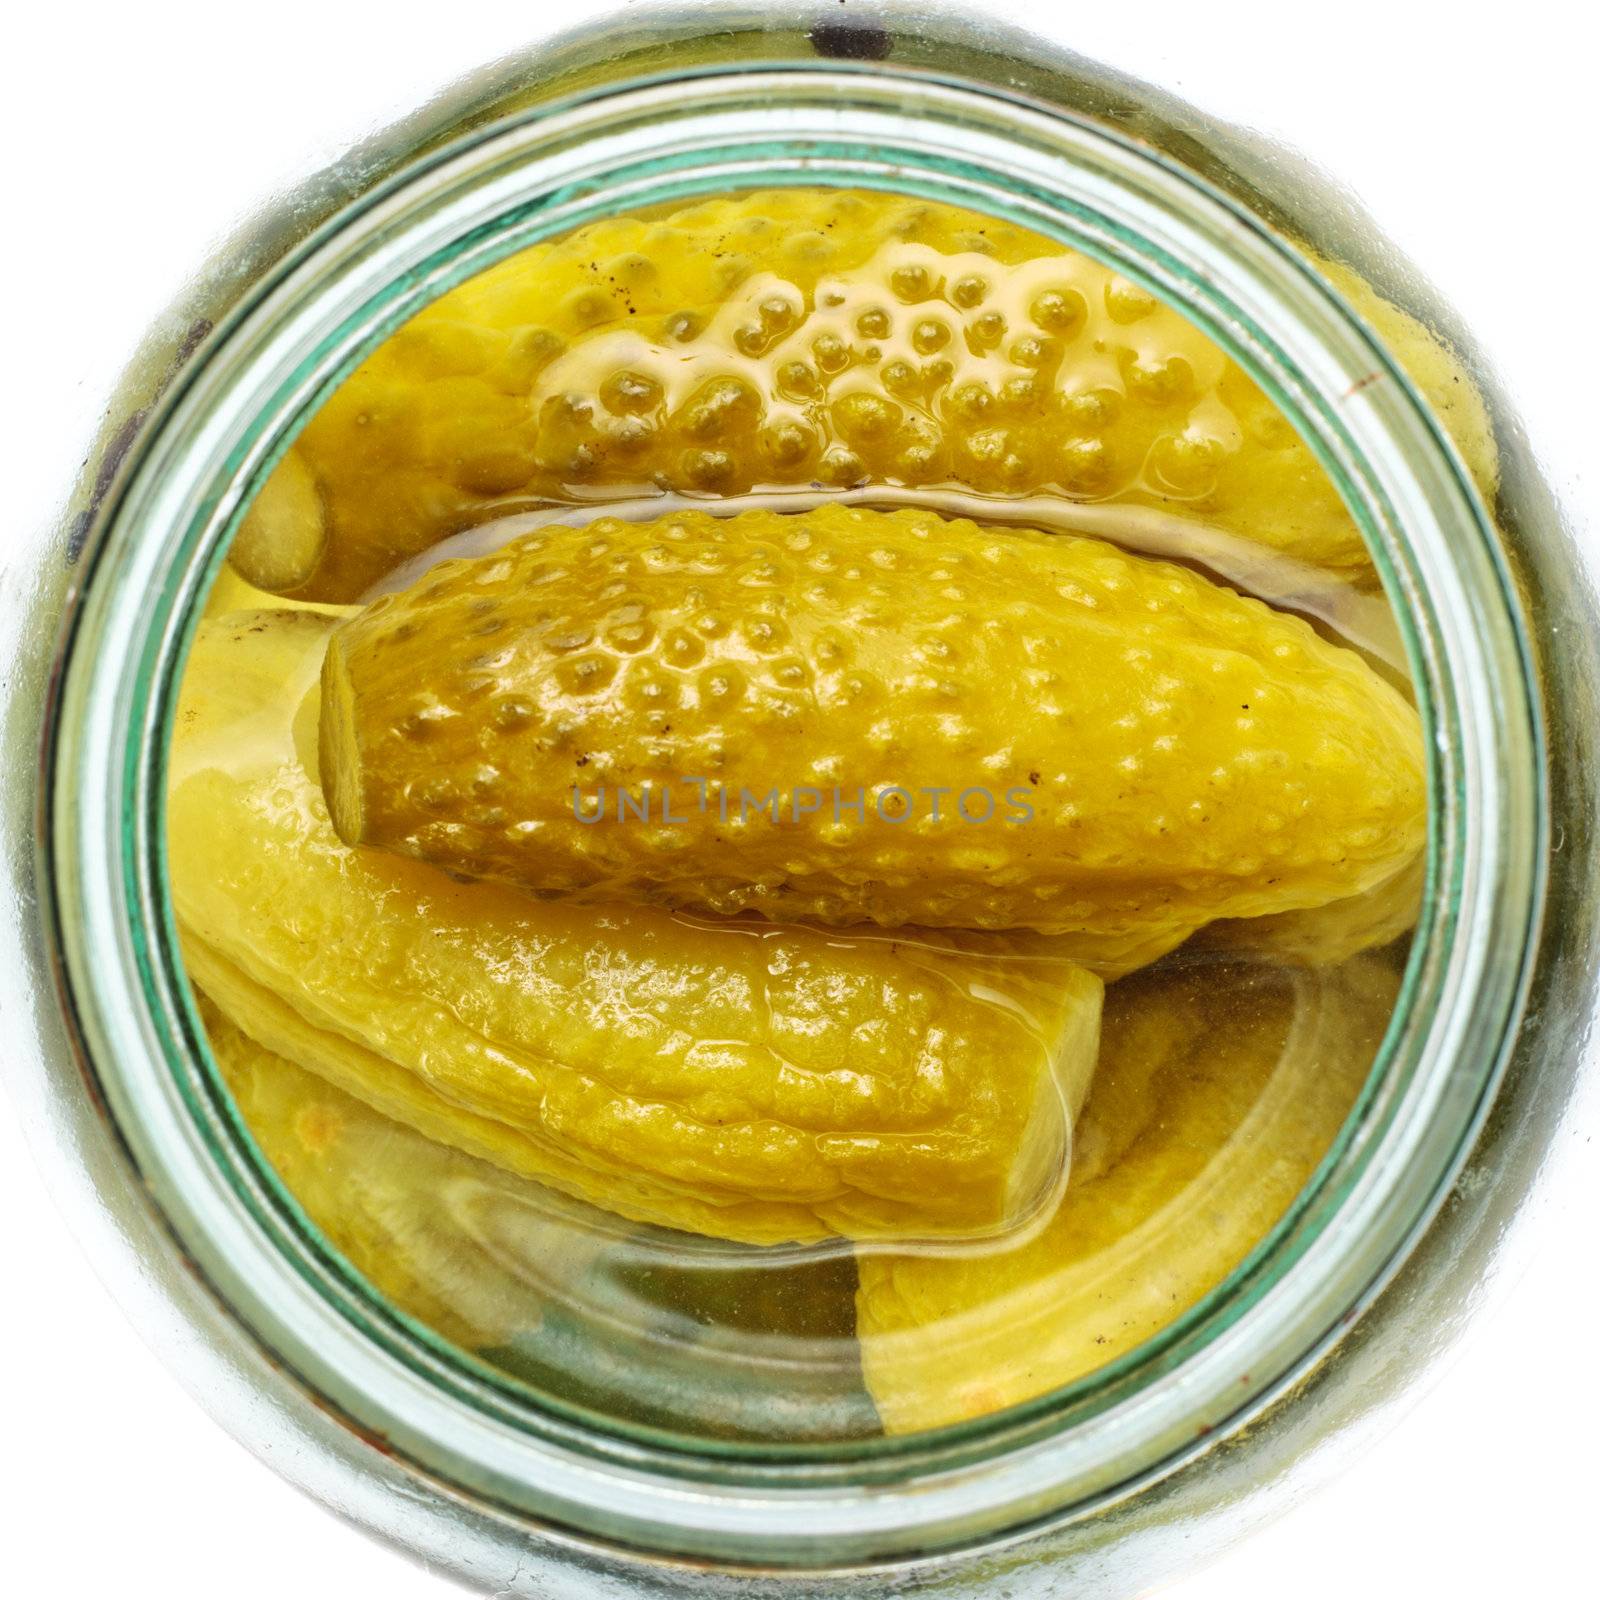 Jars Of Pickles by petr_malyshev